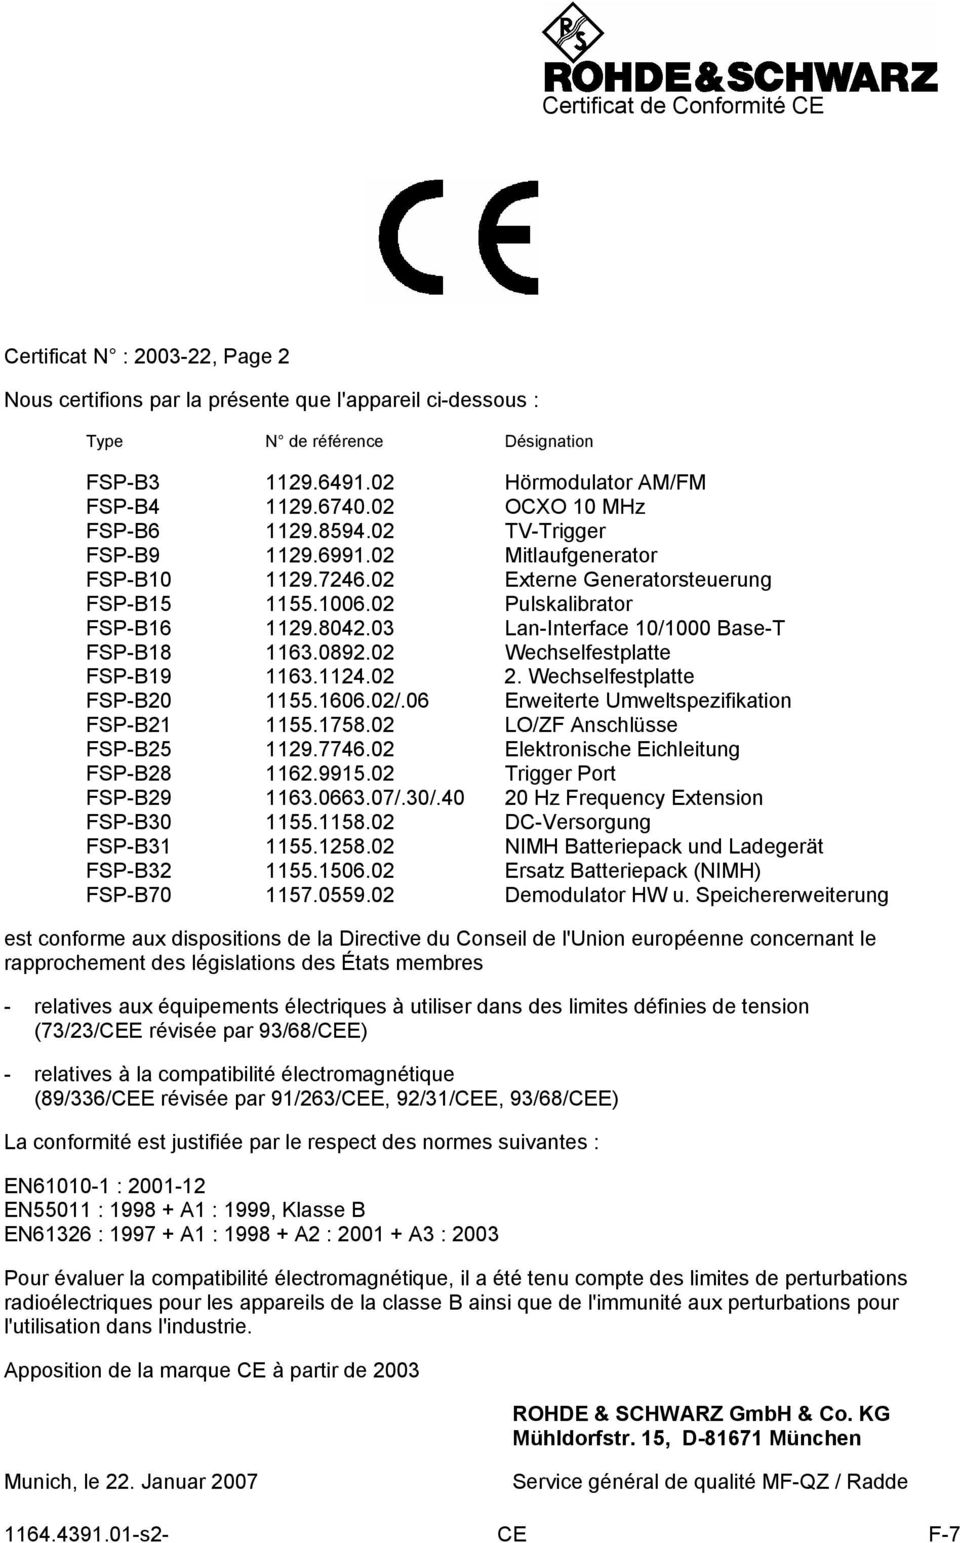 02 Pulskalibrator FSP-B16 1129.8042.03 Lan-Interface 10/1000 Base-T FSP-B18 1163.0892.02 Wechselfestplatte FSP-B19 1163.1124.02 2. Wechselfestplatte FSP-B20 1155.1606.02/.